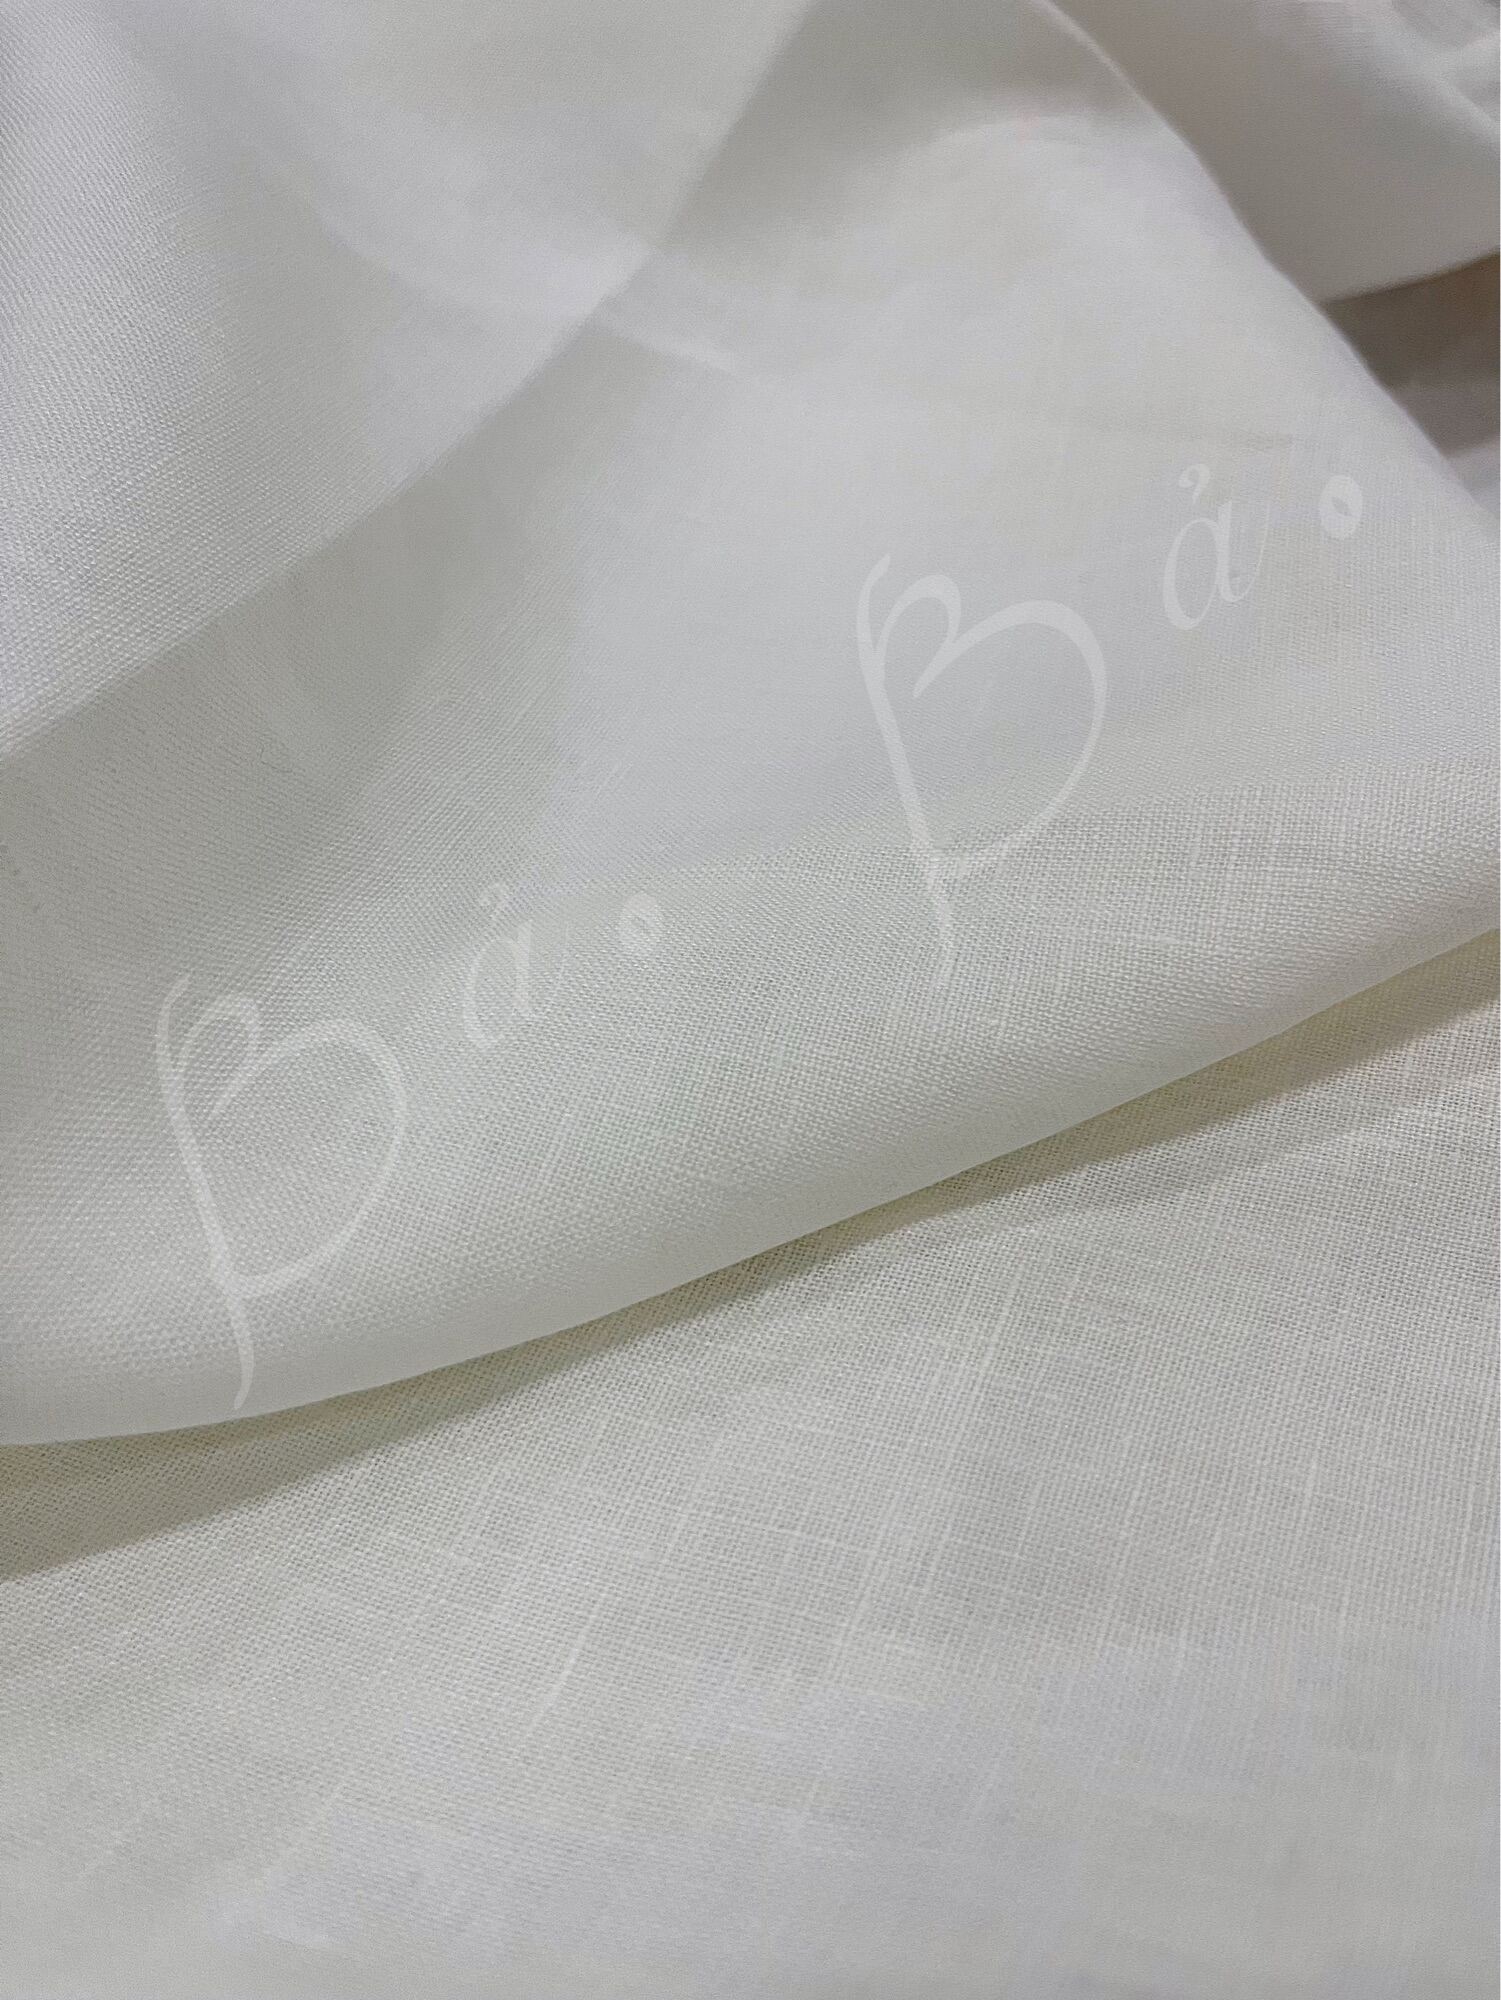 Vải Linen Tưng Premium/Pure Linen Trắng Hàng Áo Mềm Mướt Mỏng Nhẹ Khổ 1m40